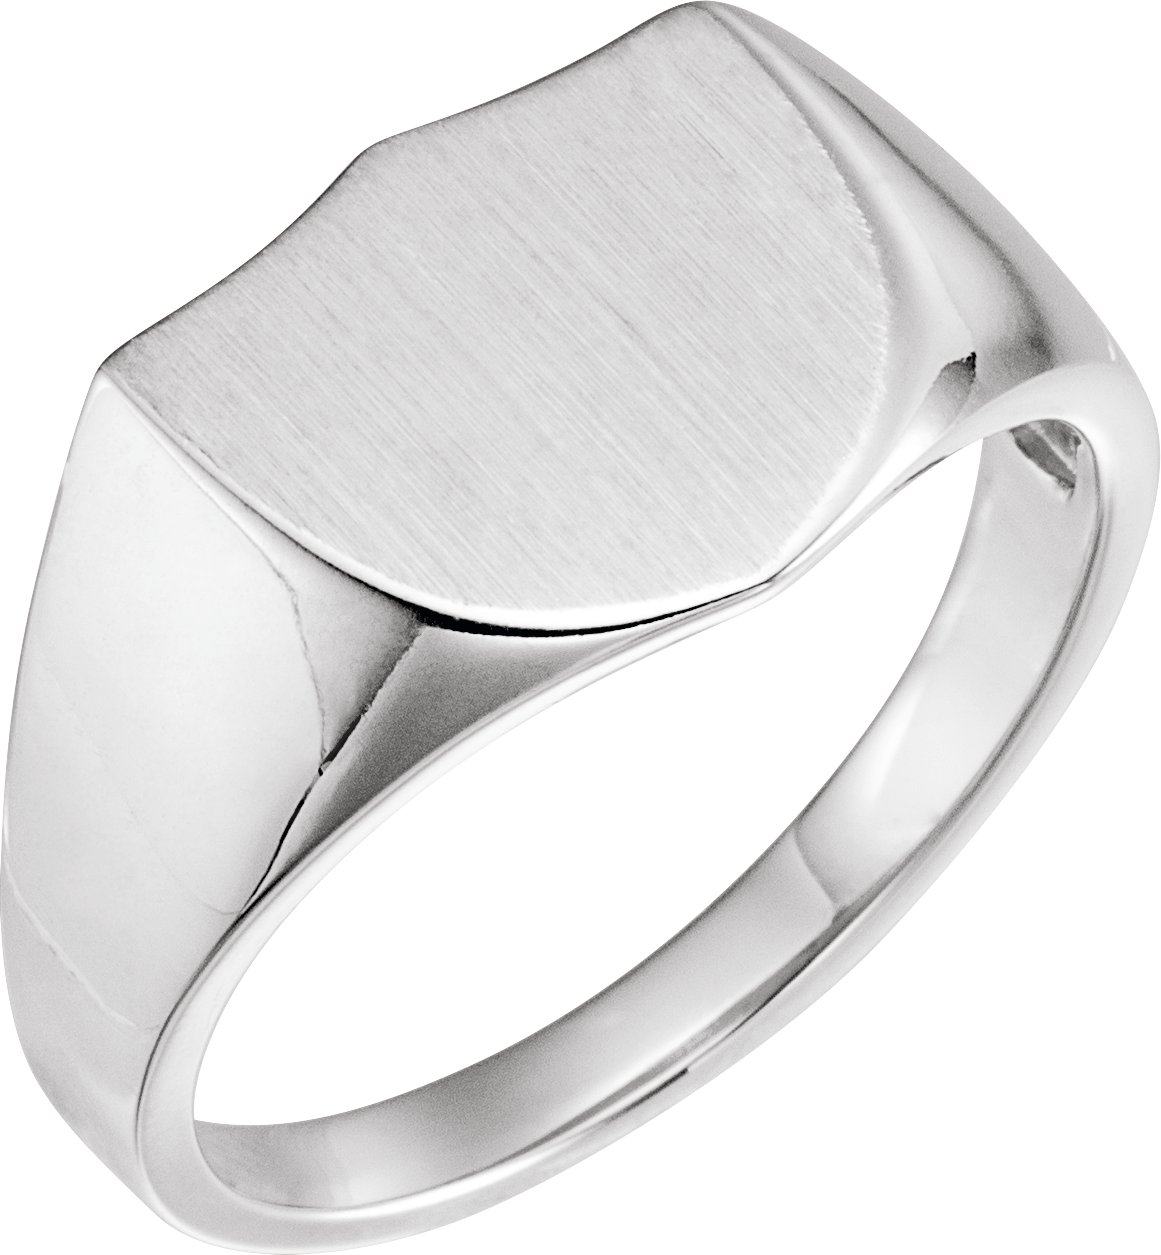 Sterling Silver 14 mm Shield Signet Ring